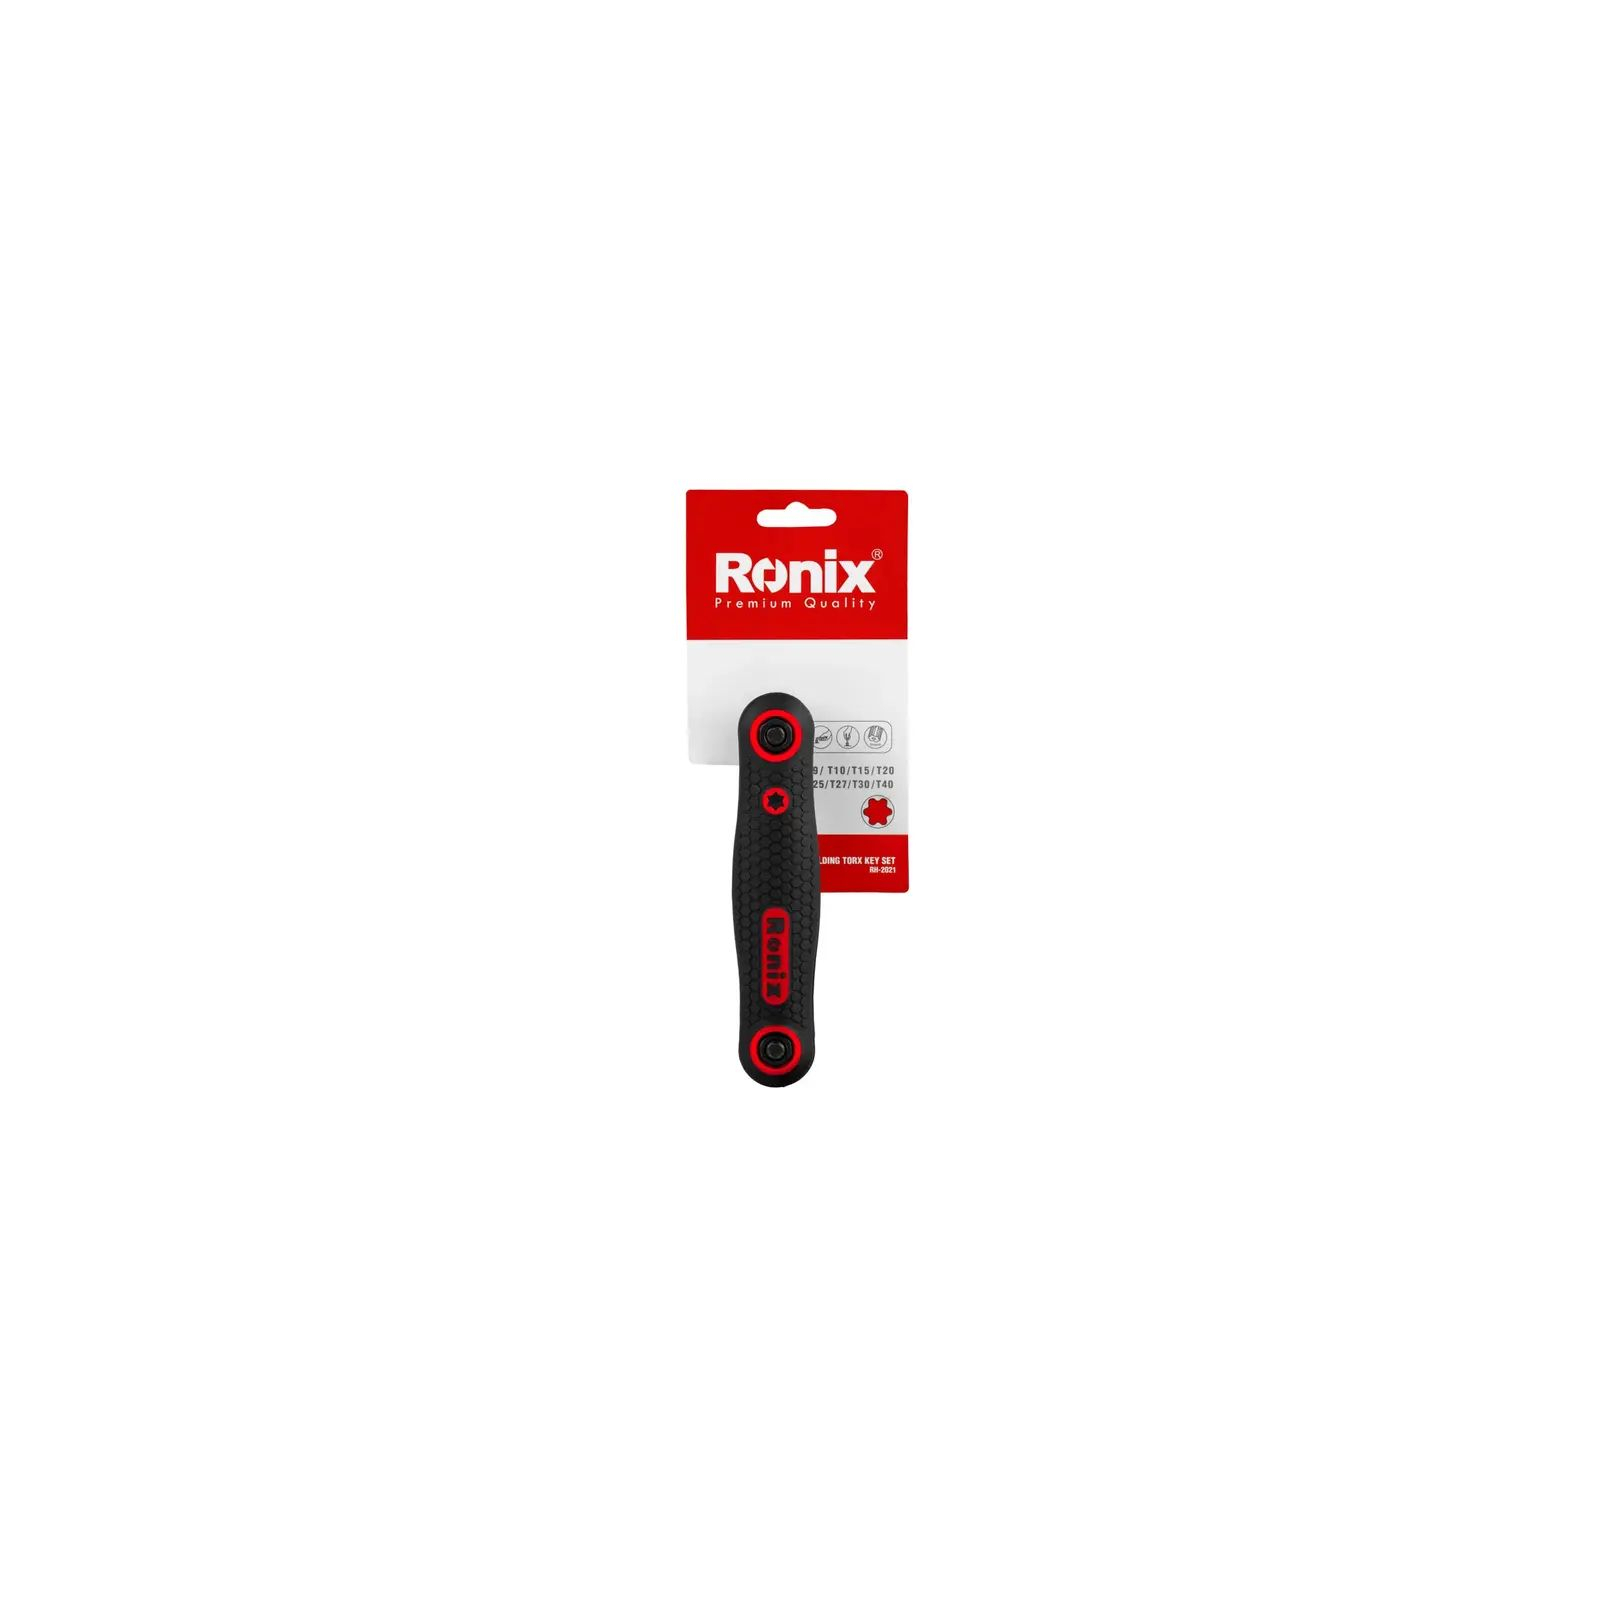 Ключ Ronix складной Torx (RH-2021) изображение 6